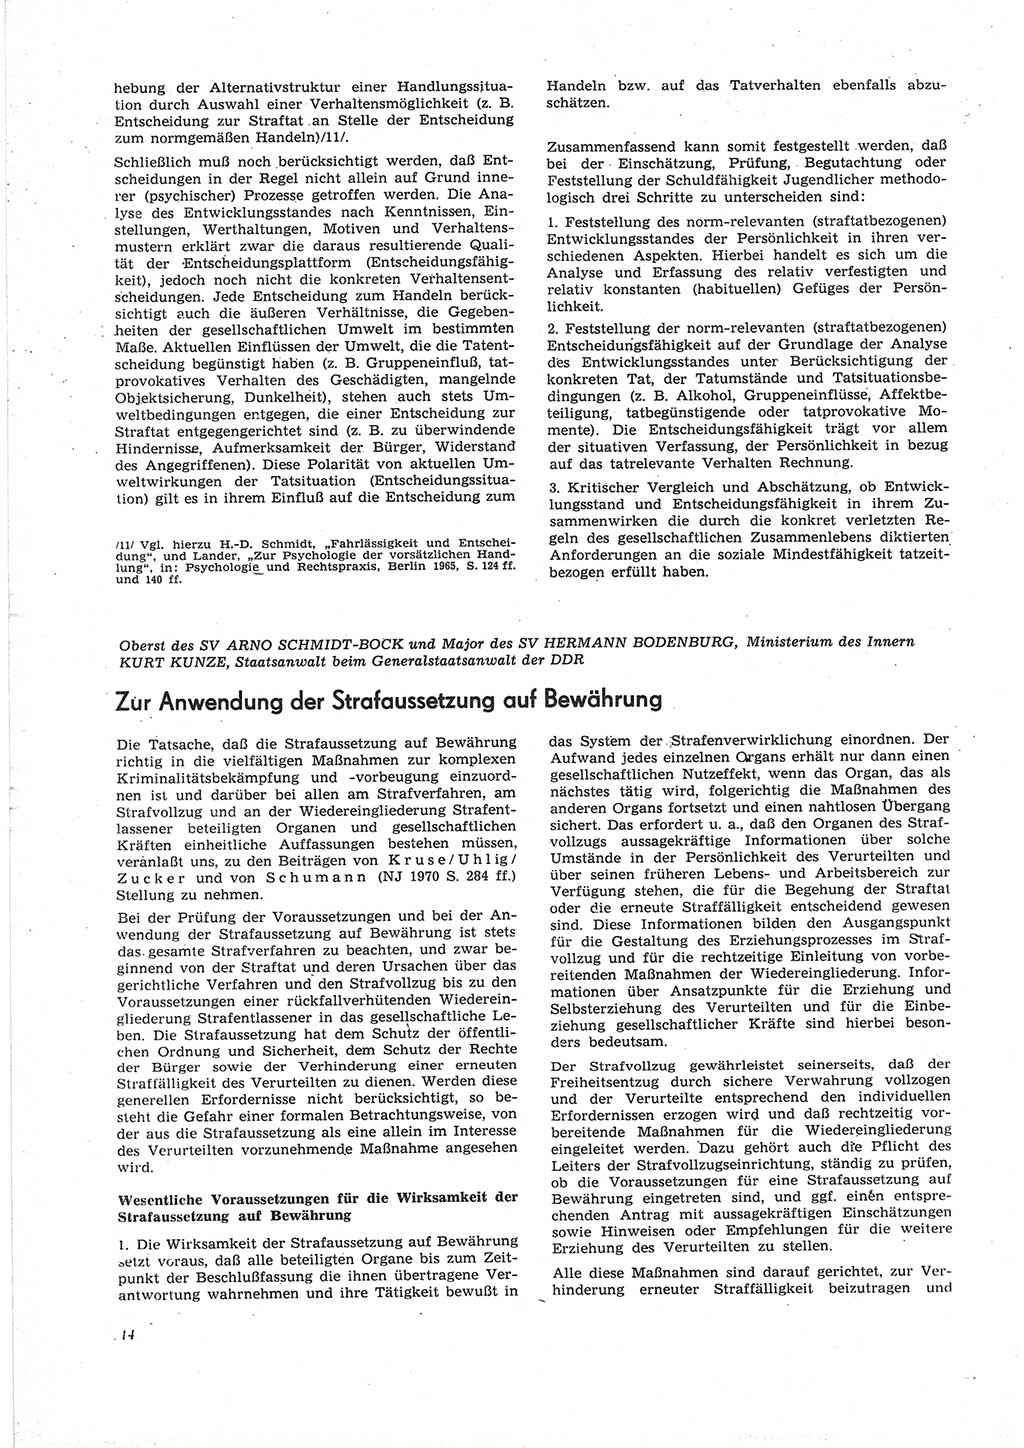 Neue Justiz (NJ), Zeitschrift für Recht und Rechtswissenschaft [Deutsche Demokratische Republik (DDR)], 25. Jahrgang 1971, Seite 14 (NJ DDR 1971, S. 14)